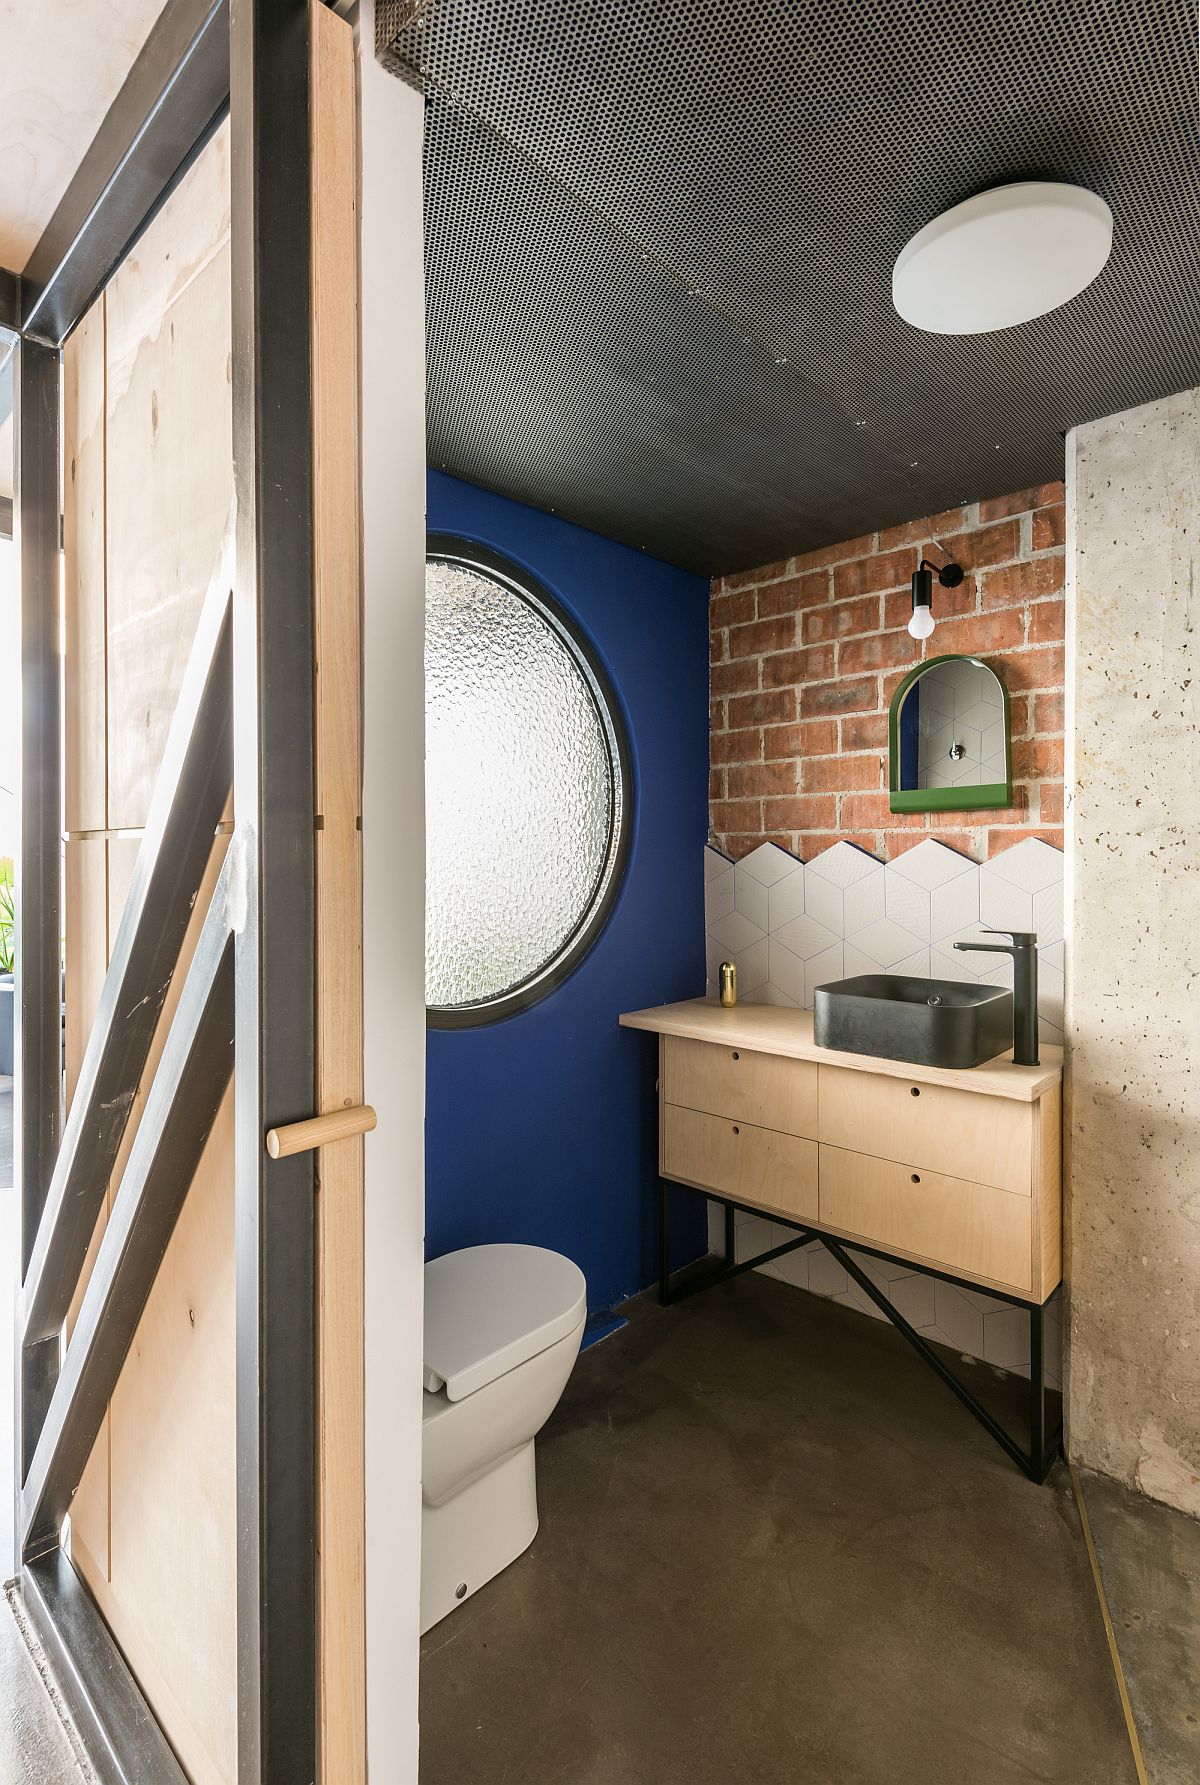 Cửa trượt phân tách phòng tắm với khu vực sinh hoạt chung, tủ lưu trữ kết hợp bồn rửa tiện ích cùng góc tường nhỏ nhưng được thiết kế ấn tượng.